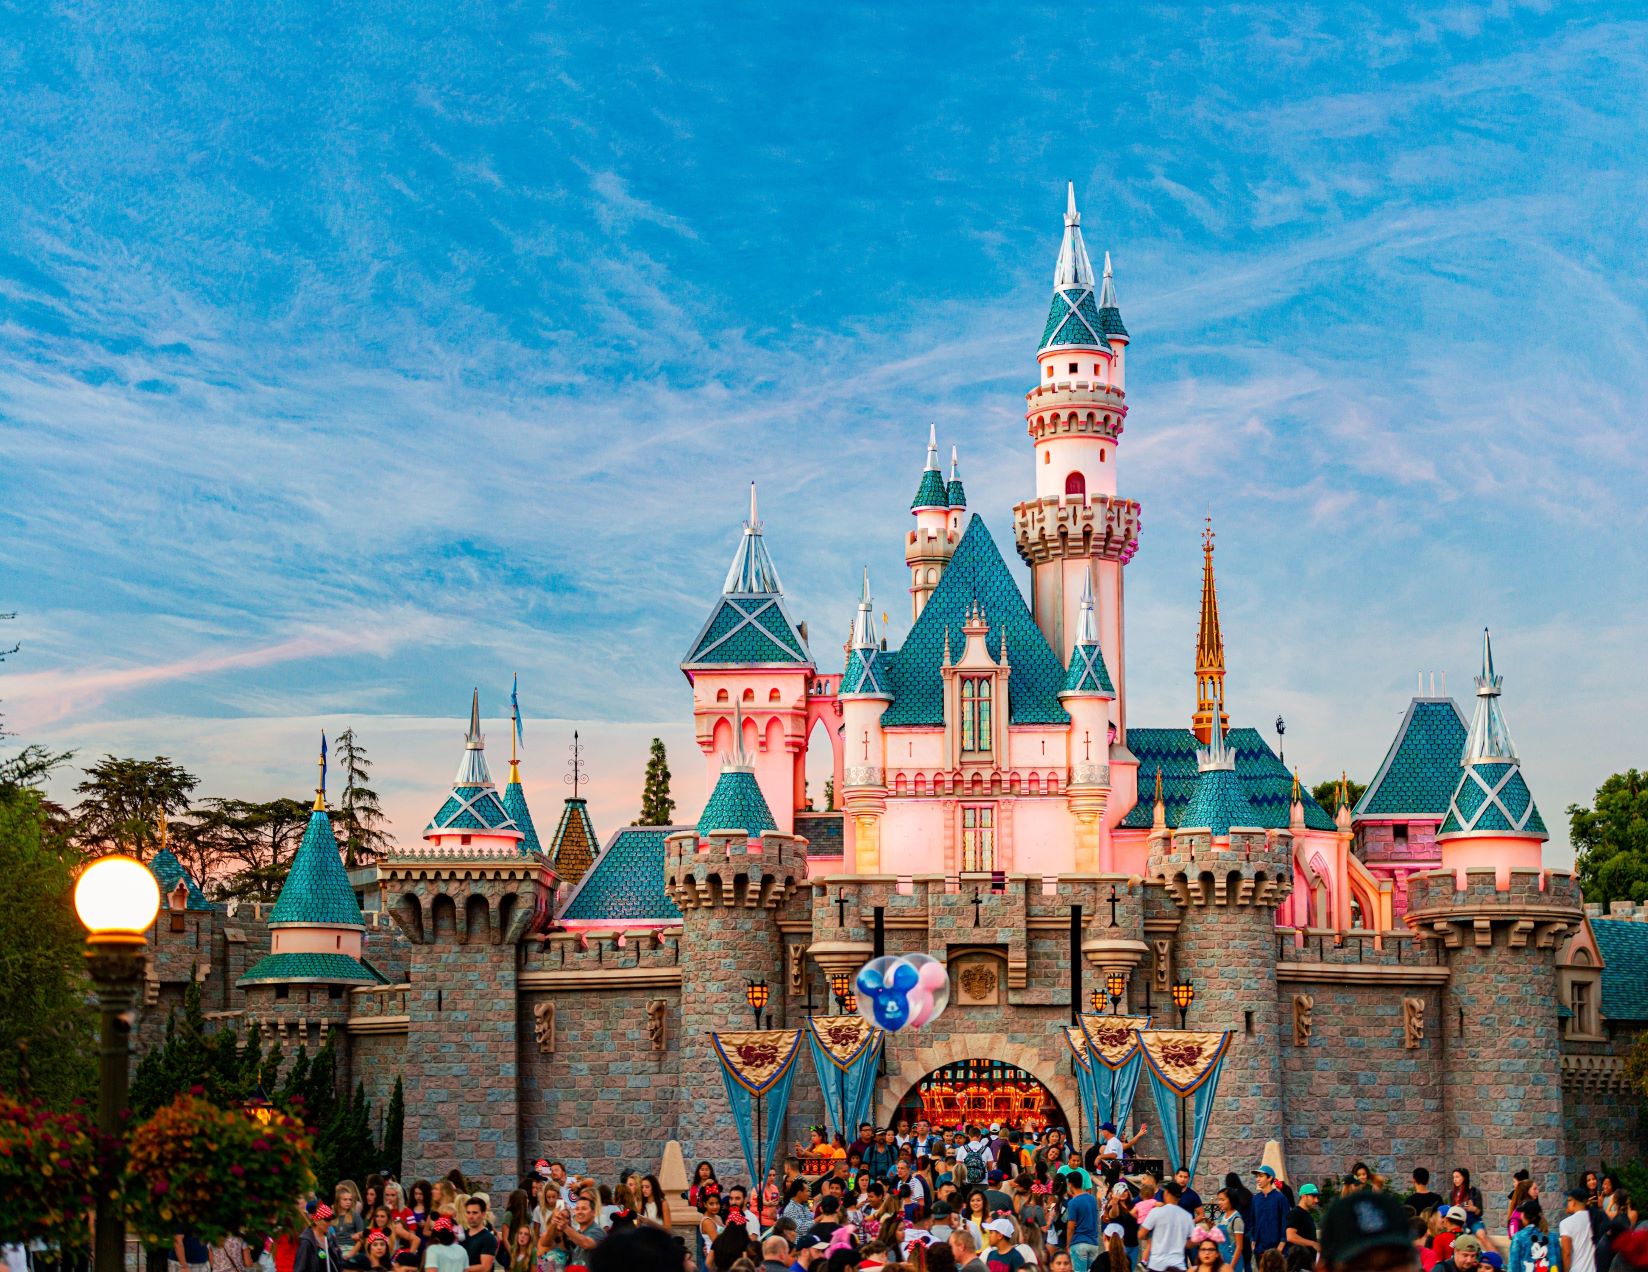 Disneyland สวนสนุกระดับโลกมีวิธีสรรหาและบริหารคนอย่างไร HIGHLIGHTS ดิสนีย์แลนด์คือสวนสนุกระดับโลกที่ได้ชื่อว่าเป็น​ “ดินแดนแห่งความฝัน” มีพนักงานรวมกว่า 130,000 คน กระจายตัวอยู่ทั่วโลก ทำให้เกิดคำถามว่าดิสนีย์สามารถบริหารทรัพยากรบุคคลที่มากขนาดนี้ให้มีทัศนคติเดียวกัน และทำสวัสดิการให้คนส่วนมากพอใจได้อย่างไร ดิสนีย์เชื่อว่าคนคือผู้สร้างสถานที่และไม่ว่าผู้บริหารจะมีมุมมองที่สวยหรูเพียงใด แต่ถ้าคนไม่มีความพร้อมในการนำเสนอแผนงานนั้น ดิสนีย์แลนด์ก็จะไม่มีวันเป็นจริง ดังนั้นดิสนีย์จึงให้ความสำคัญกับการพัฒนาคนอย่างเข้มข้นโดยตั้งเป้าว่าจะต้องทำให้เหนือกว่าที่คนทั่วไปคาดหวังเท่านั้น ดิสนีย์แลนด์ต้องการให้คนรู้ว่าแม้ภาพแสดงภายนอกจะสวยงามแค่ไหน แต่จริง ๆ ดิสนีย์แลนด์ก็คือองค์กรหนึ่งที่มีทั้งข้อดีและข้อเสีย และสิ่งที่บางคนชอบ อาจเป็นสิ่งที่อีกคนไม่ชอบก็ได้ ดังนั้นดิสนีย์จะชี้ให้ผู้สมัครงานเห็นองค์กรในทุกแง่มุมเพื่อป้องกันการผิดหวังซึ่งอาจนำไปสู่การลาออกและทำให้บริษัทต้องเสียทรัพยากรเพิ่มเติมโดยไม่จำเป็น บริษัททั่วไปสามารถนำมุมมองของดิสนีย์แลนด์มาปรับใช้ได้เลย เพราะที่นี่ไม่ได้จำกัดตัวเองอยู่แค่การเป็นสวนสนุกเท่านั้น แต่เป็นเหมือน “เมืองตัวอย่าง” ที่ตอบเราว่าการบริหารคนให้ดีจะทำให้เกิดความสุขได้อย่างไร ถ้าพูดถึงคำว่าสวนสนุกระดับโลกที่ใคร ๆ ก็ฝันอยากจะไปเยือนสักครั้ง เราเชื่อว่าชื่อของดิสนีย์แลนด์ (Disneyland) สวนสนุกที่ได้ชื่อว่าเป็น “ดินแดนแห่งความฝัน” ย่อมถูกพูดถึงเป็นชื่อแรก ๆ แน่นอน ทั้งด้วยความแข็งแรงของตัวละครอย่างมิกกี้ เมาส์, มินนี่ เมาส์, โดนัลด์ ดั๊ก และอีกมากมายที่เติบโตมาพร้อมกับวัยเด็กของเรา ตลอดจนเครื่องเล่นระดับโลกที่ถ่ายทอดออกมาอย่างตื่นเต้นเร้าใจจนถูกนำไปต่อยอดเป็นภาพยนตร์อย่าง The Pirates of the Caribbean เป็นต้น สิ่งเหล่านี้ทำให้เราต้องมาตั้งคำถามว่าดิสนีย์สามารถเปลี่ยนสวนสนุกที่ดูเป็นเรื่องของเด็กให้กลายเป็นชุมชนของคนทุกเพศทุกวัยได้อย่างไร ตลอดจนมีเคล็ดลับใดบ้างที่ถูกนำมาใช้เพื่อคงความพิเศษของดินแดนแห่งนี้ตลอดระยะเวลาหลายสิบปีที่ผ่านมา ดิสนีย์แลนด์คือธุรกิจที่แตกต่างจากองค์กรที่เราเห็นได้ทั่วไปตามท้องตลาด ดังนั้นการศึกษากลยุทธ์ของพวกเขาจึงเป็นประโยชน์ต่อทีม HR ที่อยากหากฎเกณฑ์, สวัสดิการ รวมถึงนโยบายใหม่ ๆ มาปรับใช้ภายในองค์กร ดังนั้นไม่ว่าคุณจะเคยสัมผัสเสน่ห์ของสวนสนุกระดับโลกนี้ด้วยตัวเองหรือไม่ เราก็ขอชวนคุณมาร่วมเดินทางไปสู่โลกของดิสนีย์แลนด์พร้อม ๆ กัน ณ บัดนี้ ! <!--TOC--> ดิสนีย์แลนด์ (Disneyland) มีวิธีสรรหาบุคลากรอย่างไร มีคำกล่าวว่า “คนคือผู้สร้างสถานที่” ซึ่งประโยคนี้เหมาะสมกับดิสนีย์แลนด์เป็นอย่างยิ่ง เพราะปกติแล้วเป้าหมายของคนที่มาสวนสนุกคือการปลดปล่อยความเครียดให้มากที่สุด ดังนั้นทุกคนจึงคาดหวังการบริการที่ดีชนิดที่หาไม่ได้จากแหล่งอื่น ซึ่งแปลว่าหากพนักงานของดิสนีย์แลนด์ไม่สามารถทำได้ตามที่ถูกคาดหวัง ก็มีความเป็นไปได้สูงที่ผู้คนจะหันไปใช้ทางเลือกเพื่อสร้างความสุขจากที่อื่น ไม่จำเป็นต้องเสียเงินแพง ๆ กับบริการที่ไม่ตอบโจทย์ความต้องการ ดิสนีย์แลนด์เข้าใจถึงความต้องการข้อนี้ดีจึงให้ความสำคัญกับการสรรหาบุคลากรอย่างเข้มข้น ซึ่งเราแบ่งหัวข้อการเรียนรู้ได้เป็น 4 ประเด็นดังต่อไปนี้ ดิสนีย์แลนด์จะให้ความสำคัญกับตัวตนของพนักงานมากที่สุด บริษัทระดับโลกส่วนใหญ่มักใช้คำถามยาก ๆ เพื่อให้พนักงานได้แสดงฝีมือออกมามากที่สุด แต่ที่ดิสนีย์นั้นพวกเขาให้ความสำคัญกับความเป็นตัวของตัวเองของพนักงานมากที่สุด เพราะแม้ทักษะจะเป็นเรื่องสำคัญก็จริง แต่หากบุคคลดังกล่าวไม่รู้วิธีถ่ายทอดความสามารถออกมาอย่างถูกวิธีจนทำให้บรรยากาศในภาพรวมเสียหาย ทักษะเหล่านั้นก็จะหมดความสำคัญลงทันที เหตุนี้ถ้าคุณจะไปสมัครงานกับดิสนีย์แลนด์ ก่อนที่จะเข้าไปถึงคำถามยาก ๆ แบบเฉพาะเจาะจงจริง ๆ ในช่วงแรกนั้นคำถามแบบโหดที่สุดที่คุณจะได้เจอคือการถามว่า “ตัวละครของดิสนีย์ที่ชอบที่สุดคืออะไร” คำถามนี้อาจฟังดูไม่ยากสำหรับคนที่ติดตามผลงานของพวกเขาอยู่แล้ว แต่สำหรับคนที่ไม่ได้ทำการบ้านและไม่ได้ชอบดิสนีย์แต่เพียงสมัครเข้ามาเพราะผลประโยชน์บางอย่าง คำถามนี้จะช่วยคัดคนเหล่านั้นออกไปโดยปริยาย เพราะดิสนีย์มีแนวคิดว่าพนักงานในทุกระดับตั้งแต่ล่างสุดจนถึงผู้บริหารจำเป็นต้องเจ้าใจภาพรวมด้านปรัชญาและวัฒนธรรมองค์กรอย่างเข้มข้นเพื่อให้แผนงานทั้งหมดลื่นไหลอย่างแข็งแรง https://th.hrnote.asia/orgdevelopment/what-is-organizational-culture-210604/ นอกจากนี้หากคุณมาสมัครในตำแหน่งงานที่ต้องพูดคุยเจรจากับแขกมากหน้าหลายตา ดิสนีย์จะพยายามใช้คำถามที่อยู่นอกเหนือจากบริบทการสัมภาษณ์งานทั่วไปเพื่อดูว่าทักษะการเลือกใช้คำและแก้ไขสถานการณ์เฉพาะหน้าของคุณเป็นอย่างไรบ้าง ซึ่งจะทำให้พนักงานลืมคำตอบที่เตรียมมาและเผยด้านที่เป็นตัวเองออกมาอย่างเป็นอิสระมากขึ้น ทำให้ทีม HR ได้คำตอบที่ซื่อสัตย์ จริงใจมากกว่าเดิม ดิสนีย์แลนด์จะบอกคุณทั้งข้อดีและข้อเสียขององค์กร ธุรกิจส่วนมากจะให้ความสำคัญกับภาพลักษณ์องค์กร (Employees Branding) เป็นพิเศษโดยเฉพาะเมื่อต้องแข่งขันแย่งชิงพนักงานมากฝีมือกับบริษัทอื่น ๆ เหตุนี้พวกเขาจึงพยายามนำเสนอแต่ด้านบวกเพื่อโน้มน้าวให้คนรู้สึกประทับใจและตัดสินใจเลือกทำงานกับองค์กร อย่างไรก็ตามวิธีนี้อาจทำให้พนักงานมองเนื้องาน “สวยงามกว่าที่ควรจะเป็น” เพราะทุกคนต่างรู้ดีว่าไม่มีที่ทำงานใดหรอกที่มีแต่ความสุขโดยปราศจากปัญหา ดังนั้นจึงไม่แปลกที่องค์กรในลักษณะนี้จะมีพนักงานหน้าใหม่ลาออกเป็นระยะด้วยเหตุผลว่าองค์กรจริง ๆ ไม่ได้สวยงามเหมือนที่พวกเขาถูก​ “ขายฝัน”​เมื่อครั้งมาสมัครงาน แต่ที่ดิสนีย์แลนด์นั้นต่างไป พวกเขารู้ดีว่าสิ่งสำคัญที่รักษาพนักงานเอาไว้กับองค์กร (Retention) คือการเปิดโอกาสให้พวกเขาเตรียมตัวรับมือกับสิ่งที่จะต้องเจอ และวิธีรับมือที่ดีที่สุดก็คือการชี้แจงตั้งแต่ต้นว่าหากเลือกมาทำงานกับดิสนีย์ ปัญหาทั้งหมดที่ต้องเจอหรือมีแนวโน้มว่าจะเกิดขึ้นมีอะไรบ้าง และองค์กรมีวิธีช่วยเหลืออย่างไร ควบคู่ไปกับการนำเสนอสวัสดิการในด้านบวกเข้าไปด้วย การนำเสนอองค์กรแบบนี้จะเป็นการดึงพนักงานลงมาอยู่ในโลกของความเป็นจริง อย่างเช่นหากเราเอาแต่นำเสนอว่าดิสนีย์เป็นบริษัทแรก ๆ ที่มีสวัสดิการดีมาก ให้พนักงานเข้างานได้ตามเวลาที่สะดวกและไม่มีการบังคับเรื่องเครื่องแต่งกาย (เป็นสวัสดิการที่มีมานานก่อนที่องค์กรส่วนใหญ่จะทำในยุคหลังโควิด-19) แต่ถ้าองค์กรไม่บอกว่านโยบายดังกล่าวอาจทำให้เส้นแบ่งระหว่างการทำงานกับเวลาพักผ่อนหายไป หรืออาจทำให้วินัยของการทำงานลดหย่อนลง พนักงานก็จะไม่มีกลไกรับมือกับเรื่องนี้อย่างที่ควรจะเป็น https://qath.hrnote.asia/questions/1117 กล่าวโดยสรุปว่าการปล่อยให้คนเข้าใจเพียงข้อดีอย่างเดียว จะทำให้คุณค่าขององค์กรลดลงเช่นกัน ดิสนีย์จึงเน้นย้ำว่าในการทำธุรกิจนั้นเราต้องสอนให้พนักงานมองเห็นข้อดี-ข้อเสียแบบรอบด้านเสมอ หากไม่อยากเสียทรัพยากรเพิ่มเติมอย่างไม่จำเป็น ดิสนีย์จะเข้าร่วม Job Fairs และมีปฏิสัมพันธ์กับเหล่านักศึกษาเสมอ นิตยสารชื่อดังอย่าง Cosmopolitan กล่าวว่าดิสนีย์คือขาประจำของอีเวนท์หางาน (Job Fair) เสมอ เพื่อรับสมัครเด็กฝึกงาน ตลอดจนพนักงานพาร์ทไทม์เพื่อวางรากฐานให้กับองค์กรในระยะยาว วิธีนี้นอกเหนือจากจะเปิดโอกาสให้เด็ก ๆ ในชุมชนใกล้เคียงดิสนีย์แลนด์มีโอกาสทำงานแล้ว ความใส่ใจตรงนี้ยังช่วยให้ดิสนีย์เข้าถึงนักศึกษาระดับหัวกะทิได้ไวกว่าองค์กรอื่น ๆ ที่ไม่ได้มีปฏิสัมพันธ์กับมหาวิทยาลัยโดยตรง ดิสนีย์เชื่อมั่นว่าคนรุ่นเก่าต้องฟังจากเด็กรุ่นใหม่ โดยเฉพาะเด็กที่เพิ่งเรียนจบซึ่งเป็นช่วงวัยที่เต็มไปด้วยมุมมองและไอเดียที่น่าสนใจ ความรู้เหล่านี้อาจนำไปสู่กลยุทธ์ที่พลิกแพลงผลประกอบการในโลกธุรกิจได้เลยด้วยซ้ำ ดังนั้นการเข้าร่วมกิจกรรมจัดหางานไม่ว่าเล็กหรือใหญ่จึงเป็นวิธีเบื้องต้นที่ทำให้เราเข้าถึงบุคล ากรที่มีศักยภาพได้โดยตรงและรวดเร็วกว่าวิธีอื่น ที่สำคัญยังสามารถทำการสัมภาษณ์เบื้องต้นภายในงานซึ่งเป็นการลดทรัพยากรที่สิ้นเปลืองได้เป็นอย่างดี ดิสนีย์แลนด์จะให้ข้อมูลกับผู้สมัครแบบมากที่สุดเท่าที่จะมากได้ เคยไหมที่คุณเปิดรับสมัครงานไปแต่ได้ผู้สมัครที่มีคุณสมบัติขัดแย้งกับสิ่งที่ต้องการ ปัญหานี้จะไม่เกิดขึ้นที่ดิสนีย์ เพราะพวกเขาจะระบุ Job Describtion อย่างละเอียดที่สุดเท่าที่จะทำได้ ส่วนหนึ่งเพราะดิสนีย์เป็นองค์กรระดับโลกที่มีผู้สมัครเข้ามาจำนวนมาก การเขียนสิ่งที่ต้องการให้ชัดเจนจึงเป็นขั้นตอนแรกที่จะช่วยให้ HR คัดเลือกคนที่เหมาะสมได้ง่ายขึ้น ยกตัวอย่างเช่นหากดิสนีย์ต้องการรับสมัครพนักงานมารับบทเป็นเจ้าชายเจ้าหญิงในดิสนีย์แลนด์ แทนที่พวกเขาจะเขียนภาพรวมกว้าง ๆ เพื่อเปิดโอกาสให้คนมาทดลองคว้าโอกาส ดิสนีย์จะเลือกใช้วิธีระบุไปเลยว่าต้องการคนที่มีอายุมากกว่า 18 ปีเท่านั้น, พูดได้หลายภาษาเท่านั้น, มีส่วนสูงมากกว่าเกณฑ์ที่กำหนดเท่านั้น หรือต้องส่งภาพถ่ายที่ปราศจากการแต่งหน้ามาเท่านั้น วิธีนี้จะช่วยลดอัตราของใบสมัครที่ไม่ตรงโจทย์ได้ดี เราสามารถสรุปรูปแบบการสรรหาบุคลากรของดิสนีย์ได้ว่าพวกเขาเน้นย้ำไปที่การให้ข้อมูลแบบครบวงจร ใส่ใจรายละเอียด และต้องการทราบข้อมูลในลักษณะเดียวกันกลับมาจากผู้สมัครเช่นกัน ข้อมูลเหล่านี้จะถูกนำไปประยุกต์ใช้ร่วมกับองค์ประกอบอื่น ๆ ภายในองค์กรจนออกมาเป็นกลไกที่ส่งผลดีต่อทั้งผู้สมัครซึ่งอาจเป็นพนักงานในอนาคต และผู้บริหารเองในภาพรวม ดิสนีย์แลนด์ (Disneyland) มีวิธีบริหารจัดการคนอย่างไร เมื่อผ่านขั้นตอนการสรรหามาแล้ว สิ่งที่ดิสนีย์ต้องให้ความสำคัญตามมาทันทีก็คือการบริหารจัดการพนักงานในมือที่มีรวมกว่าแสนคนกระจายตัวอยู่ทั่วโลก ดิสนีย์ต้องการทำให้พนักงานทุกคนอยู่ด้วยความสุข เพราะความสุขคือรากฐานสำคัญที่จะทำให้ดิสนีย์ในฐานะสื่อบันเทิงสามารถถ่ายทอดพลังบวกออกไปได้อย่างที่ทุกคนคาดหวัง UK Essays ได้ทำการศึกษาเรื่องระบบพัฒนาบุคลากรของดิสนีย์และพบว่าดิสนีย์ให้ความสำคัญกับการเพิ่มทักษะให้พนักงานมากเป็นพิเศษ สอดคล้องกับอัตราการเลื่อนตำแหน่งที่เน้นสร้างคนในมากกว่าจ้างคนนอก ซึ่งทั้งหมดเกิดขึ้นภายใต้แนวคิดของวอล์ท ดิสนีย์ (Walt Disney) ผู้ก่อตั้งที่กล่าวว่า “คุณสามารถฝันถึงการสร้างสถานที่ที่สวยงามที่สุดในโลก แต่มันจะเป็นจริงได้ก็ด้วยน้ำมือของมนุษย์เท่านั้น” เหตุนี้จึงไม่แปลกหากดิสนีย์จะมีแนวทางพัฒนาบุคคลที่เข้มข้นเกินกว่าที่คนทั่วไปจะนึกถึง ลูกจ้างทุกคนในดิสนีย์แลนด์จะถูกเรียกว่า Cast (ตัวละคร) ซึ่งบริษัทมีกระบวนการสร้างพนักงานตั้งแต่วันแรกที่เข้ามาสัมภาษณ์ โดยผู้ให้สัมภาษณ์ทุกคนจะต้องดูคลิปวีดีโอขนาดสั้นเพื่อให้เข้าใจว่าปรัชญาของดิสนีย์คืออะไรและพวกเขาคาดหวังถึงสิ่งใด จากนั้นหากผู้ถูกสัมภาษณ์ได้รับเลือกเข้ามาเป็นพนักงาน ก็ต้องเข้าร่วมการฝึกเบื้องต้นเป็นเวลา 1 วันครึ่งภายใต้ชื่ออบรมว่า Traditions จากนั้นก็จะเข้าสู้ขั้นตอนการศึกษาทักษะพื้นฐาน เช่นวิธีพูดจากับลูกค้า, พฤติกรรมของตัวละคร ตลอดจนวิธีแต่งกายภายใต้ชื่ออบรมว่า Disney Look ซึ่งระบุข้อมูลละเอียดมาก เช่น ขนาดของต่างหูที่ตัวละครสามารถใส่ได้ (ห้ามใหญ่กว่าที่กำหนดเด็ดขาด), สีทาเล็บที่ตัวละครสามารถทาได้ เป็นต้น ทุกคนจะถูกฝึกให้ยิ้มตลอดเวลา เพราะอย่าลืมว่าแม้ไม่มีมนุษย์คนไหนที่สดใสตลอดเวลา แต่ในเมื่องานของเราคือการสร้างความสุขให้คนดู การฝืนอารมณ์ตรงนี้ก็เป็นการเรียนรู้อย่างหนึ่งที่ภายหลังถูกเรียกเป็นศัพท์เฉพาะว่า Disney Smile และทีม HR จะเน้นย้ำกับทีมเสมอว่า “ความสำเร็จของดิสนีย์อ้างอิงอยู่ด้วยสองปัจจัยหลัก ๆ ได้แก่การใส่ใจรายละเอียด และการทำทุกอย่างให้เกินกว่าที่อีกฝ่ายคาดหวัง” ซึ่งแนวคิดนี้สามารถนำไปใช้ได้กับธุรกิจทุกประเภท พนักงาน (หรือในที่นี้ถูกเรียกว่า “ตัวละคร”) จะต้องทำหน้าที่มากกว่า 40 ชั่วโมงต่อวัน แต่ก็มีสวัสดิการมาสนับสนุนแบบเต็มที่ ไม่ว่าจะเป็นสิทธิ์ด้านการดูแลสุขภาพแบบรอบด้าน, สิทธิ์เข้าสวนสนุกและซื้อสินค้าในราคาถูก, ทุนการศึกษาและหลักสูตรพัฒนาตนเอง, แผนดูแลหลังเกษียณ รวมถึงพื้นที่พิเศษสำหรับพนักงานโดยเฉพาะซึ่งประกอบไปด้วยทะเลสาป, สระว่ายน้ำ, สนามกีฬา ฯลฯ โดยหลักสูตรพัฒนาทักษะที่มีชื่อเสียงของดิสนีย์ถูกเรียกว่า “มหาวิทยาลัยดิสนีย์” (Disney University) ที่ทำหน้าที่สอนพนักงานในทุกหัวข้อที่จำเป็นด้วยกลวิธีแบบมืออาชีพ https://th.hrnote.asia/orgdevelopment/220308-the-future-of-employee-experience/ ดิสนีย์ยังถือเป็นองค์กรที่สนับสนุนเรื่องการทำดีต้องได้รับผลตอบแทน มีรายงานว่าสวัสดิการของพนักงานในดิสนีย์แลนด์นั้นมีมากกว่า 50 แบบ และยังมีการมอบรางวัลพนักงานดีเด่นอย่างต่อเนื่อง โดยปีค.ศ.2021 ที่ผ่านมาดิสนีย์ได้มีมติปรับเงินค่าจ้างขั้นต่ำสำหรับพนักงานที่วอลต์ดิสนีย์ เวิลด์ (Walt Disney World) เป็น 15 ดอลลาร์ต่อชั่วโมง (ไม่รวมทิป) ซึ่งมากกว่าเงินเดือนขั้นต่ำที่รัฐกำหนดถึง 50% ด้วยเหตุผลทั้งหมดที่กล่าวไปนี้ทำให้พนักงานของดิสนีย์แลนด์มีอัตราการลาออกที่ต่ำหากเทียบกับธุรกิจอื่น ผู้บริหารมองเรื่องการสรรหาและบริหารคนในดิสนีย์แลนด์อย่างไร Cosmopolitans ได้สัมภาษณ์คุณโจดี้ สวีท (Jody Sweet) รองประธานฝ่ายบุคคลของดิสนีย์เพื่อหาคำตอบว่าทำไมดิสนีย์แลนด์ถึงได้รับฉายาว่า “ดินแดนที่มีความสุขที่สุดในโลก”​ และได้คำตอบว่าใครก็ตามที่มีโอกาสทำงานกับดิสนีย์จะต้องมาด้วยทัศนคติเดียวเท่านั้นคือการสร้างช่วงเวลาอันน่าจดจำให้กับผู้มาเยือนทุกคน ดังนั้นดิสนีย์แลนด์จะให้ความสำคัญกับทักษะในด้านการสื่อสารและงานบริการเป็นพิเศษ ดิสนีย์แลนด์ให้ความสำคัญกับเรื่องการเช็คประวัติ (Background Check) เพราะตัวละครต่าง ๆ ในดิสนีย์แลนด์มีจุดเด่นตรงที่สามารถมีปฏิสัมพันธ์กับแขกได้โดยตรง ดังนั้นคงไม่ใช่เรื่องดีหากพนักงานในบริษัทเคยมีประวัติอาชญากรรมหรือล่วงละเมิดทางเพศซึ่งเป็นความเสี่ยงต่อภัยอันตรายรวมถึงภาพลักษณ์ของดิสนีย์โดยรวม นอกจากนี้ดิสนีย์ยังไม่กำหนดว่าคนที่มาทำงานกับองค์กรจะต้องเป็นคนที่เก่งที่สุดเท่านั้น ดิสนีย์เชื่อมั่นในความหลากหลายทั้งเชื้อชาติ, องค์ความรู้, เพศ และมั่นใจว่าองค์ประกอบเหล่านี้จะเกื้อหนุนให้เกิดประโยชน์กับองค์กรได้ เพราะปัจจุบันความรู้มาจากผู้คนได้ทุกรูปแบบ ส่วนทางดิสนีย์เองก็มีระบบพัฒนาบุคลากรเป็นประจำ ดังนั้นตราบใดที่ทุกคนยังมองเห็นเป้าหมายเดียวกัน ภายใต้ปรัชญาเดียวกัน การก้าวเดินไปกับดิสนีย์ก็จะทำให้คุณกลายเป็นคนที่เก่งขึ้นได้แน่นอน https://th.hrnote.asia/personnel-management/improve-employee-experience/ เธอกล่าวว่าโดยปกติแล้วคำถามที่ HR ของดิสนีย์แลนด์ใช้เพื่อสัมภาษณ์พนักงานใหม่คือคำถามที่เน้นให้ผู้สมัครเล่าประสบการณ์ในชีวิตของตนเอง เพราะดิสนีย์เชื่อว่าพวกเขาเป็นองค์กรแห่งการเล่าเรื่อง (Storytelling Culture) การตอบคำถามเหล่านี้จึงสะท้อนให้เห็นว่าผู้สมัครมีความมุ่งมั่นที่จะเล่าเรื่องราวต่าง ๆ ในแง่งามและสนุกสนานที่สุดได้อย่างไร ซึ่งแม้มันจะดูเป็นคำถามธรรมดา ๆ แต่ดิสนีย์พิสูจน์แล้วว่าคำถามแบบนี้จะทำให้ผู้สัมภาษณ์มองเห็นตัวตนที่แท้จริงของผู้สมัครได้อย่างชัดเจน ขณะเดียวกันดิสนีย์ก็หวังว่าผู้สมัครจะถามคำถามกลับมาที่ HR เช่นกัน โดยเฉพาะคำถามที่เกี่ยวกับวัฒนธรรมองค์กร หรือเรื่องอื่น ๆ ที่จะทำให้เข้าใจดิสนีย์ในแง่มุมที่นอกเหนือจากภาพแสดงทางสื่อต่าง ๆ เพื่อให้แน่ใจว่าการทำงานในดิสนีย์จะตอบโจทย์ทางอาชีพ (Career Path) ที่วางเอาไว้จริง ๆ ซึ่งเธอมองว่าการถามเป็นขั้นตอนที่สำคัญมาก ใครที่เลือกอยู่เฉย ๆ หรือปล่อยให้โอกาสนี้ผ่านไปถือเป็นข้อผิดพลาดและอาจเป็นสัญญาณที่บอกว่าพวกเขาไม่ได้สนใจตำแหน่งที่สมัครเข้ามามากเท่าที่ควร ท้ายสุดนี้เธอแนะนำว่าแม้ดิสนีย์จะขึ้นชื่อเรื่องความยืดหยุ่นในการทำงานและเปิดโอกาสให้พนักงานแต่งตัวได้ตามสบาย แต่ผู้สมัครก็ควรแต่งกายแบบให้เกียรติสถานที่มากที่สุด รวมถึงแสดงออกอย่างจริงใจว่าสนใจงานของดิสนีย์จริง ๆ โดยอาจส่งอีเมลหรือข้อความมาขอบคุณทีม HR หลังจากที่การสัมภาษณ์จบลง วิธีนี้จะทำให้พนักงานโดดเด่นกว่าผู้สมัครคนอื่น ๆ หากมีการแข่งขันเกิดขึ้นนั่นเอง บทสรุป ดิสนีย์แลนด์ (Disneyland) คือองค์กรที่ตอกย้ำให้เห็นว่าแม้ทีมบริหารจะมีภาพฝันในหัวที่สวยงามเพียงใด แต่สิ่งที่จะกำหนดว่าภาพนั้นกลายเป็นจริงได้หรือไม่ก็คือทรัพยากรคนที่จะต้องให้ความสำคัญตั้งแต่ขั้นตอนของการสรรหา, บริหาร เรื่อยไปจนถึงการดูแลเมื่อพนักงานลาออกไป เพราะความสุขจะส่งต่อไปได้ก็ต่อเมื่อตัวพนักงานมีความรู้สึกแบบเดียวกันเป็นที่ตั้งเท่านั้น หลายคนมักตั้งคำถามว่าในฐานะคนทำงานแล้ว เราควรให้ความสำคัญกับเรื่องใดมากกว่าระหว่างผลประกอบการและความสุข และใช้เวลาส่วนใหญ่ไปกับการค้นหาคำตอบนั้นอย่างเคร่งเครียด แต่จริง ๆ แล้วทั้งสองอย่างนี้ต้องเดินไปพร้อมกัน เพราะแม้ความเครียดจะทำให้งานเสร็จตามเป้าหมายที่กำหนด แต่สิ่งที่สูญเสียไปแน่นอนก็คือคุณค่าทั้งในด้านร่างกายและจิตใจ ซึ่งเมื่อเวลาผ่านไปนานเข้าจะกลายเป็นเราเองที่ต้องถอยออกมาโดยไม่ได้อะไรเลย ดิสนีย์แลนด์ทำให้เรากลับมานึกถึงความสุขในการทำงานอีกครั้ง และหวังว่าจะมีองค์กรอีกมากมายที่นำองค์ความรู้และทัศนคติดี ๆ จาก “ดินแดนที่มีความสุขที่สุดในโลก” แห่งนี้ไปปรับใช้เพื่อสร้างบรรยากาศที่สวยงามในบริษัทของคุณ Sources https://bit.ly/3QyaCEq https://bit.ly/3ptLxyx https://bit.ly/3A5C7OA https://bit.ly/3STyGDc